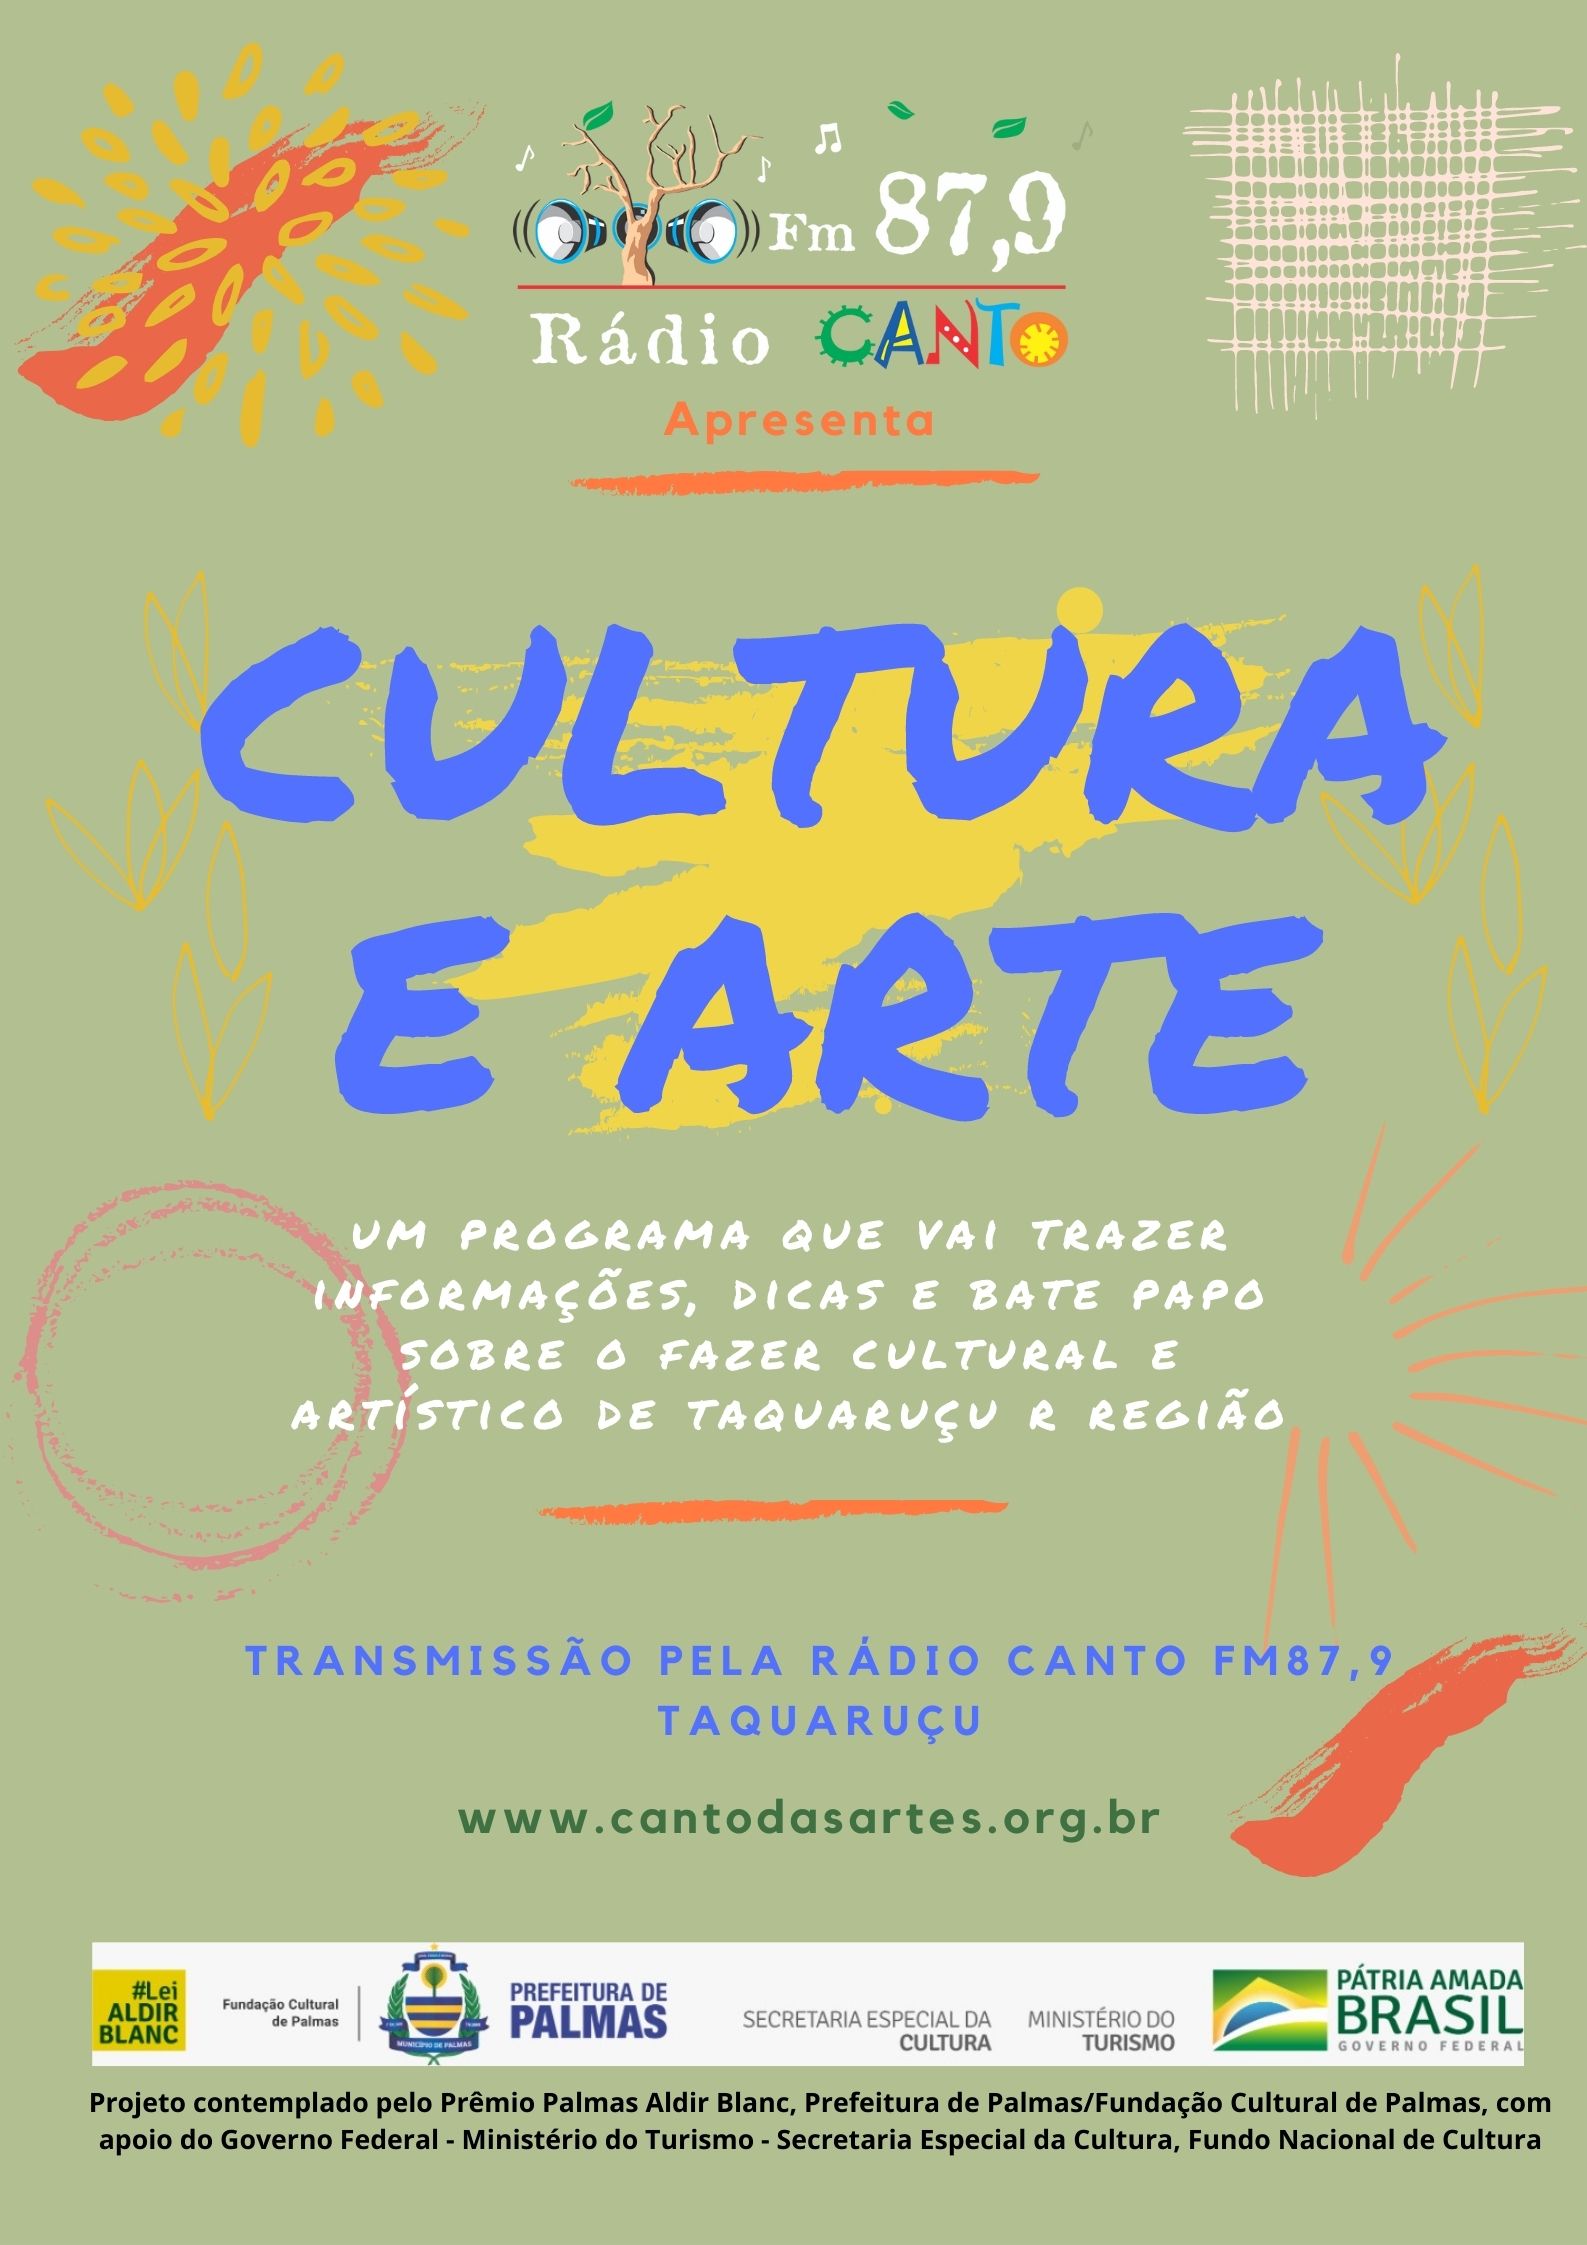 Rádio Canto FM estreia programa que vai trazer informações, dicas e bate papo sobre o fazer cultural e artístico de Taquaruçu e região.